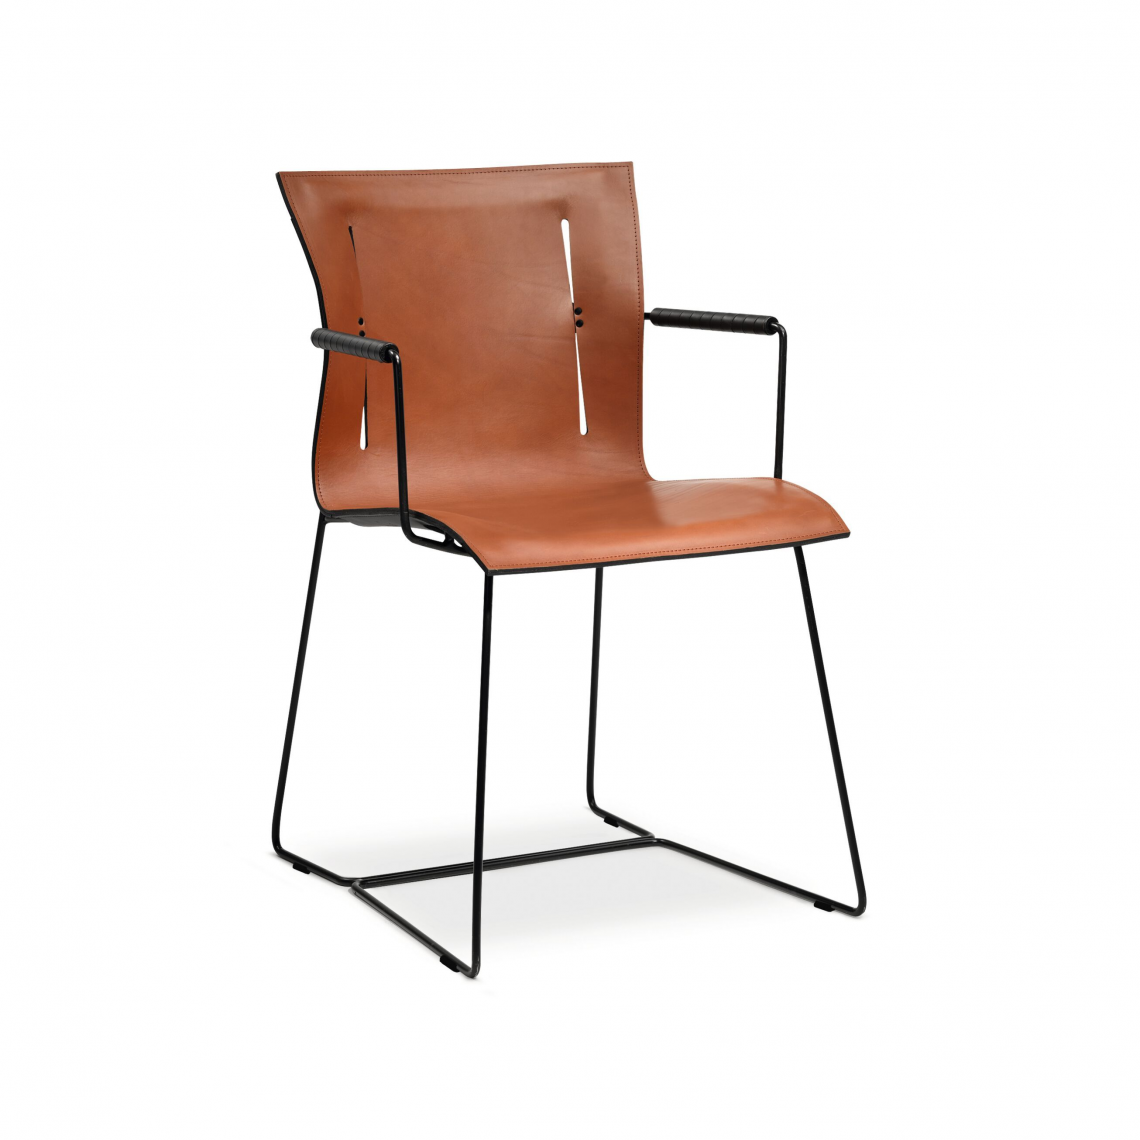 Cuoio Chair.休闲椅细节图1